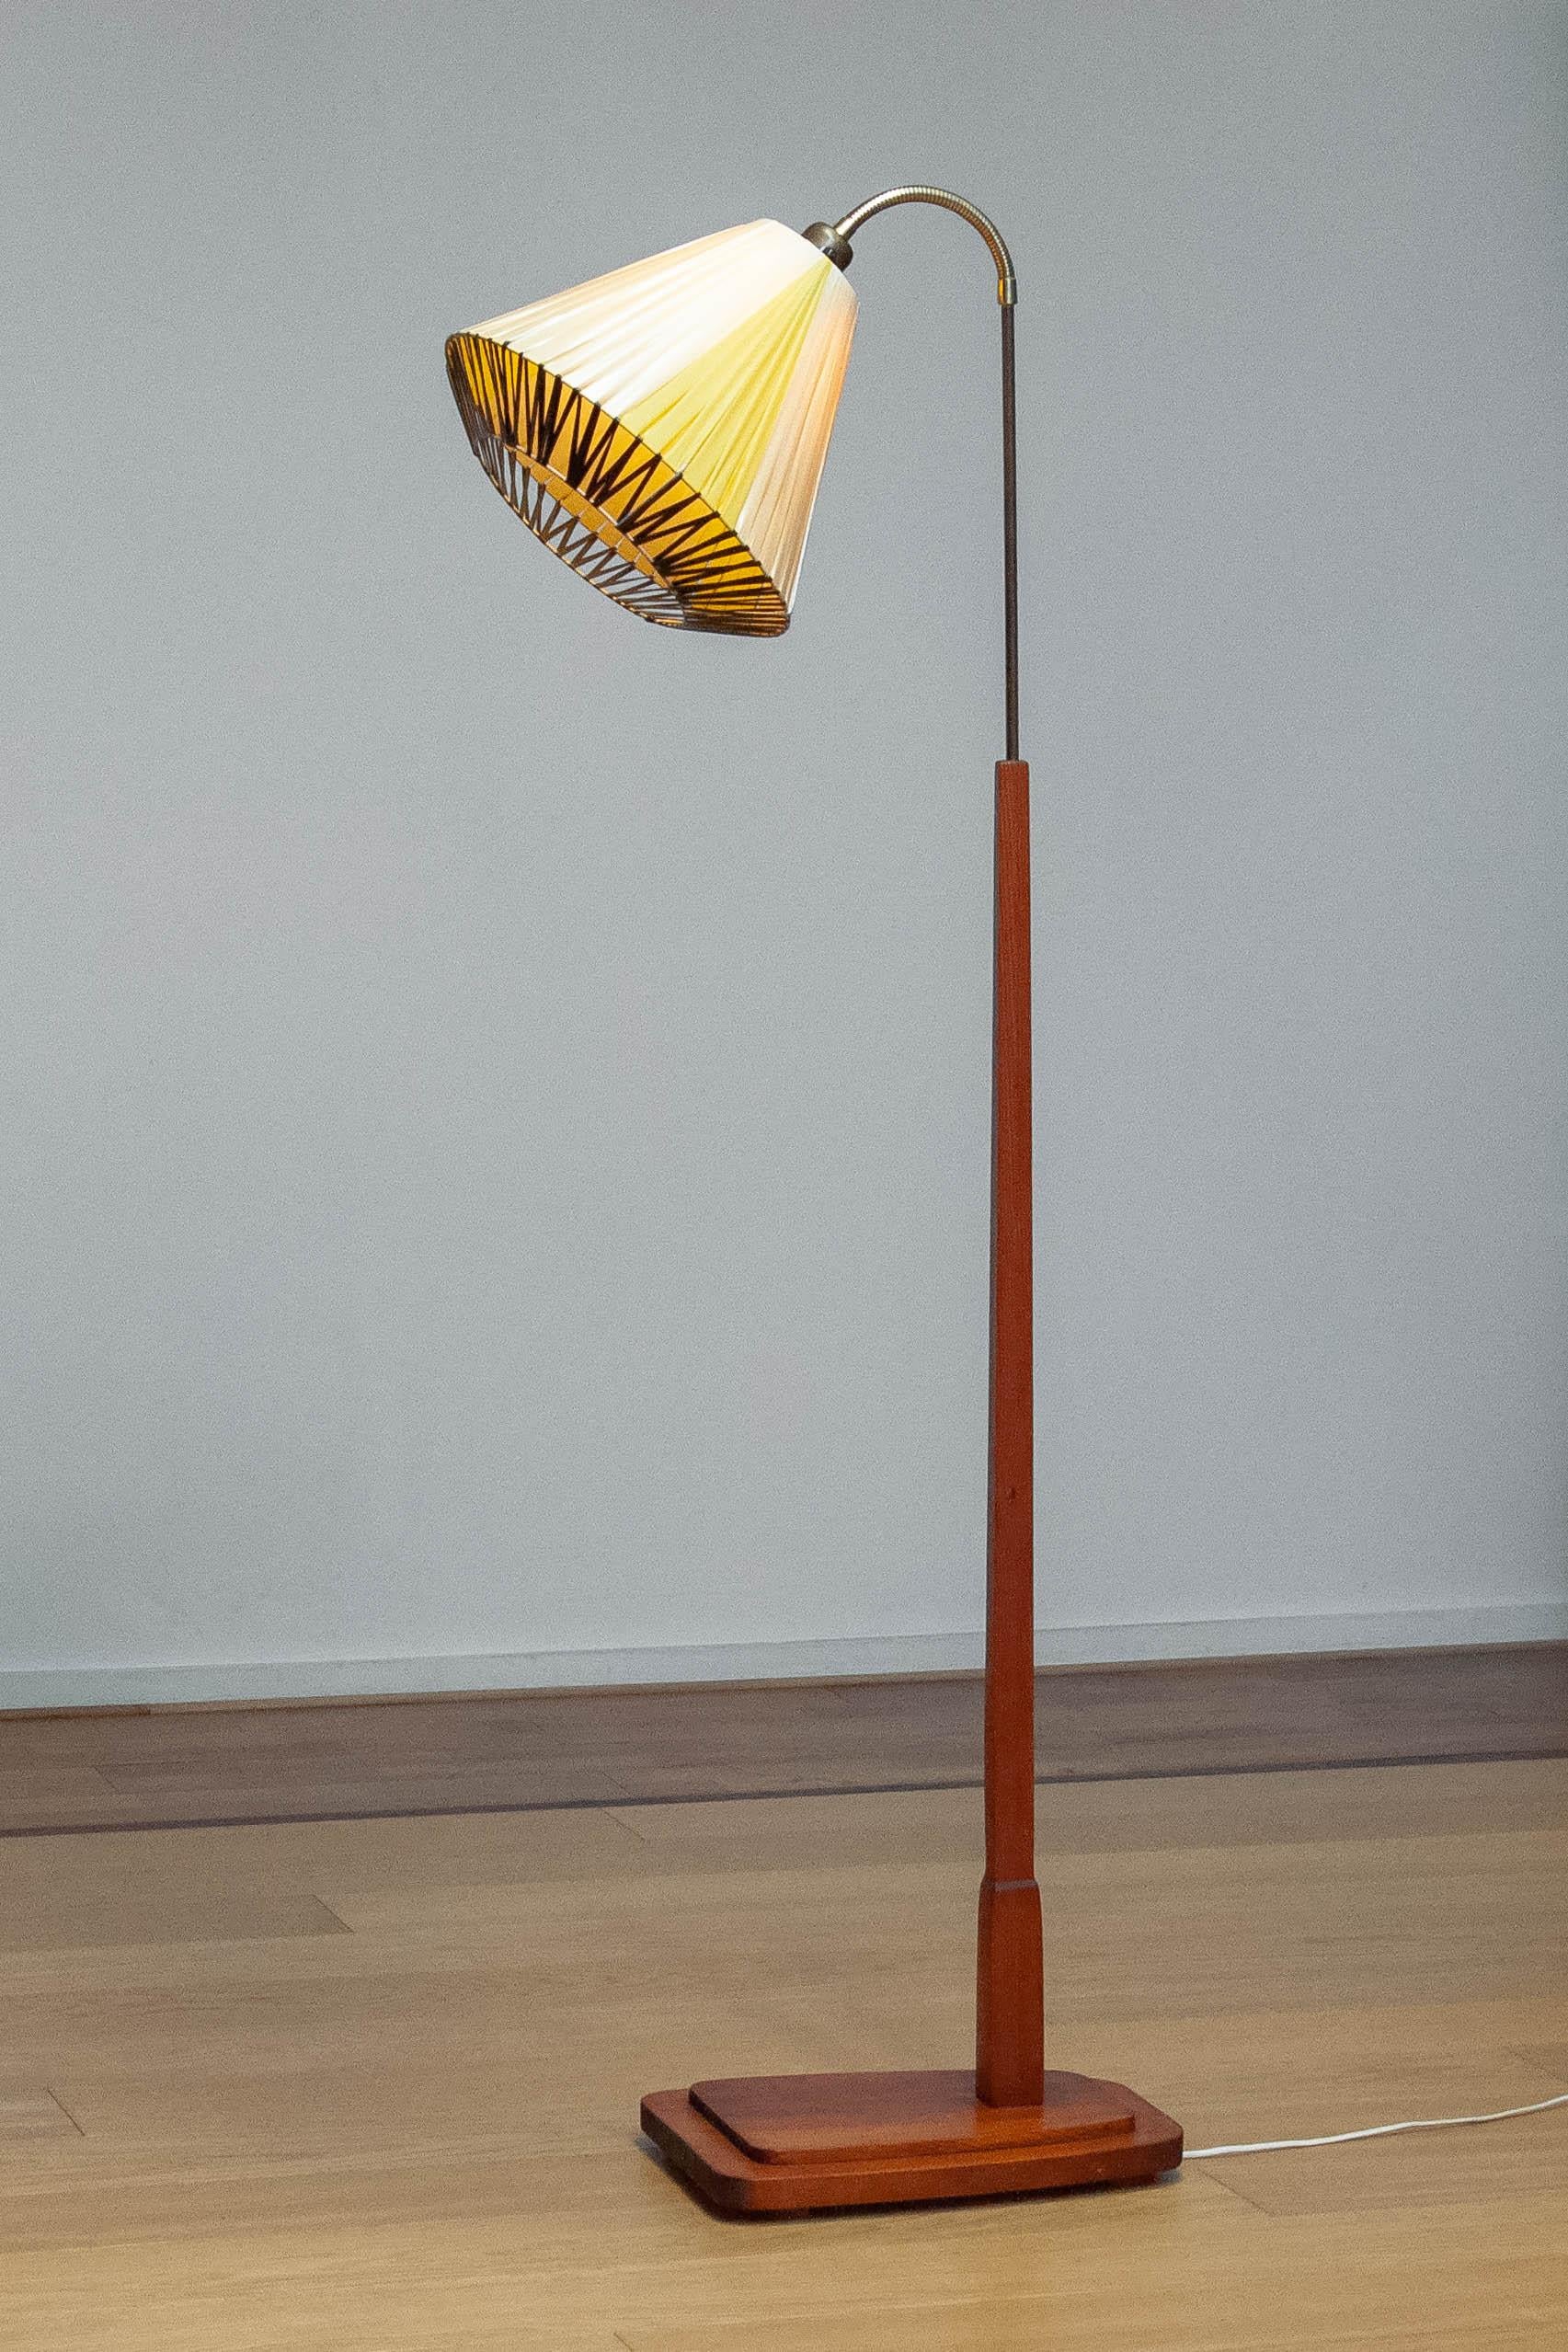 Magnifique lampadaire suédois décoratif avec une base carrée en pin et une tige en laiton au sommet de laquelle se trouve un col flexible reliant le raccord à vis, taille E28.
L'abat-jour est en fil d'acier avec ruban de polyester, dans deux tons